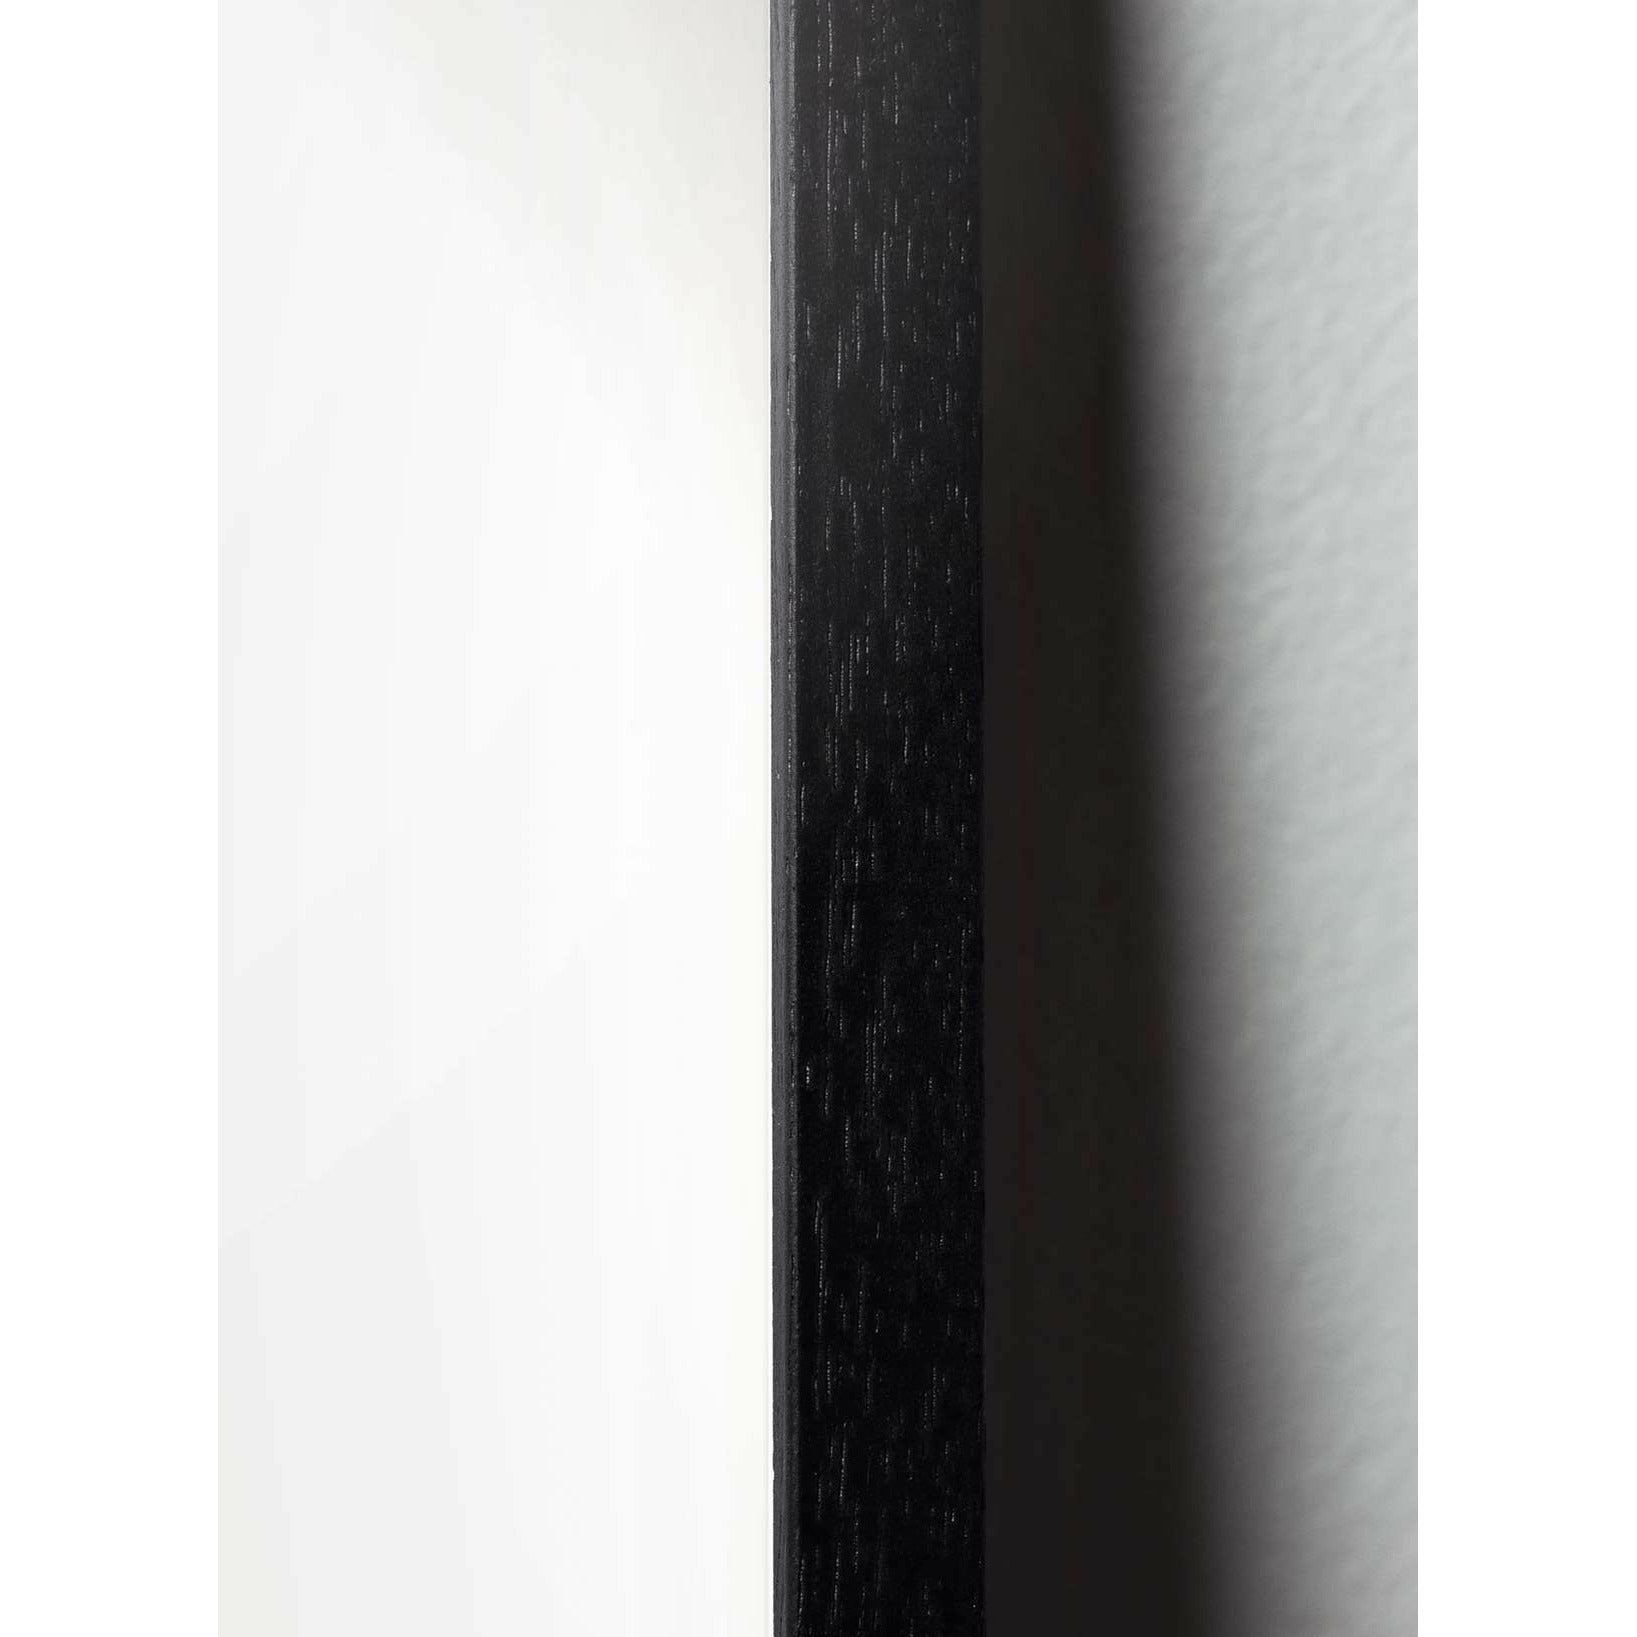 Plakát linie vajec v mozku, rám v černém lakovaném dřevu 30x40 cm, bílé pozadí